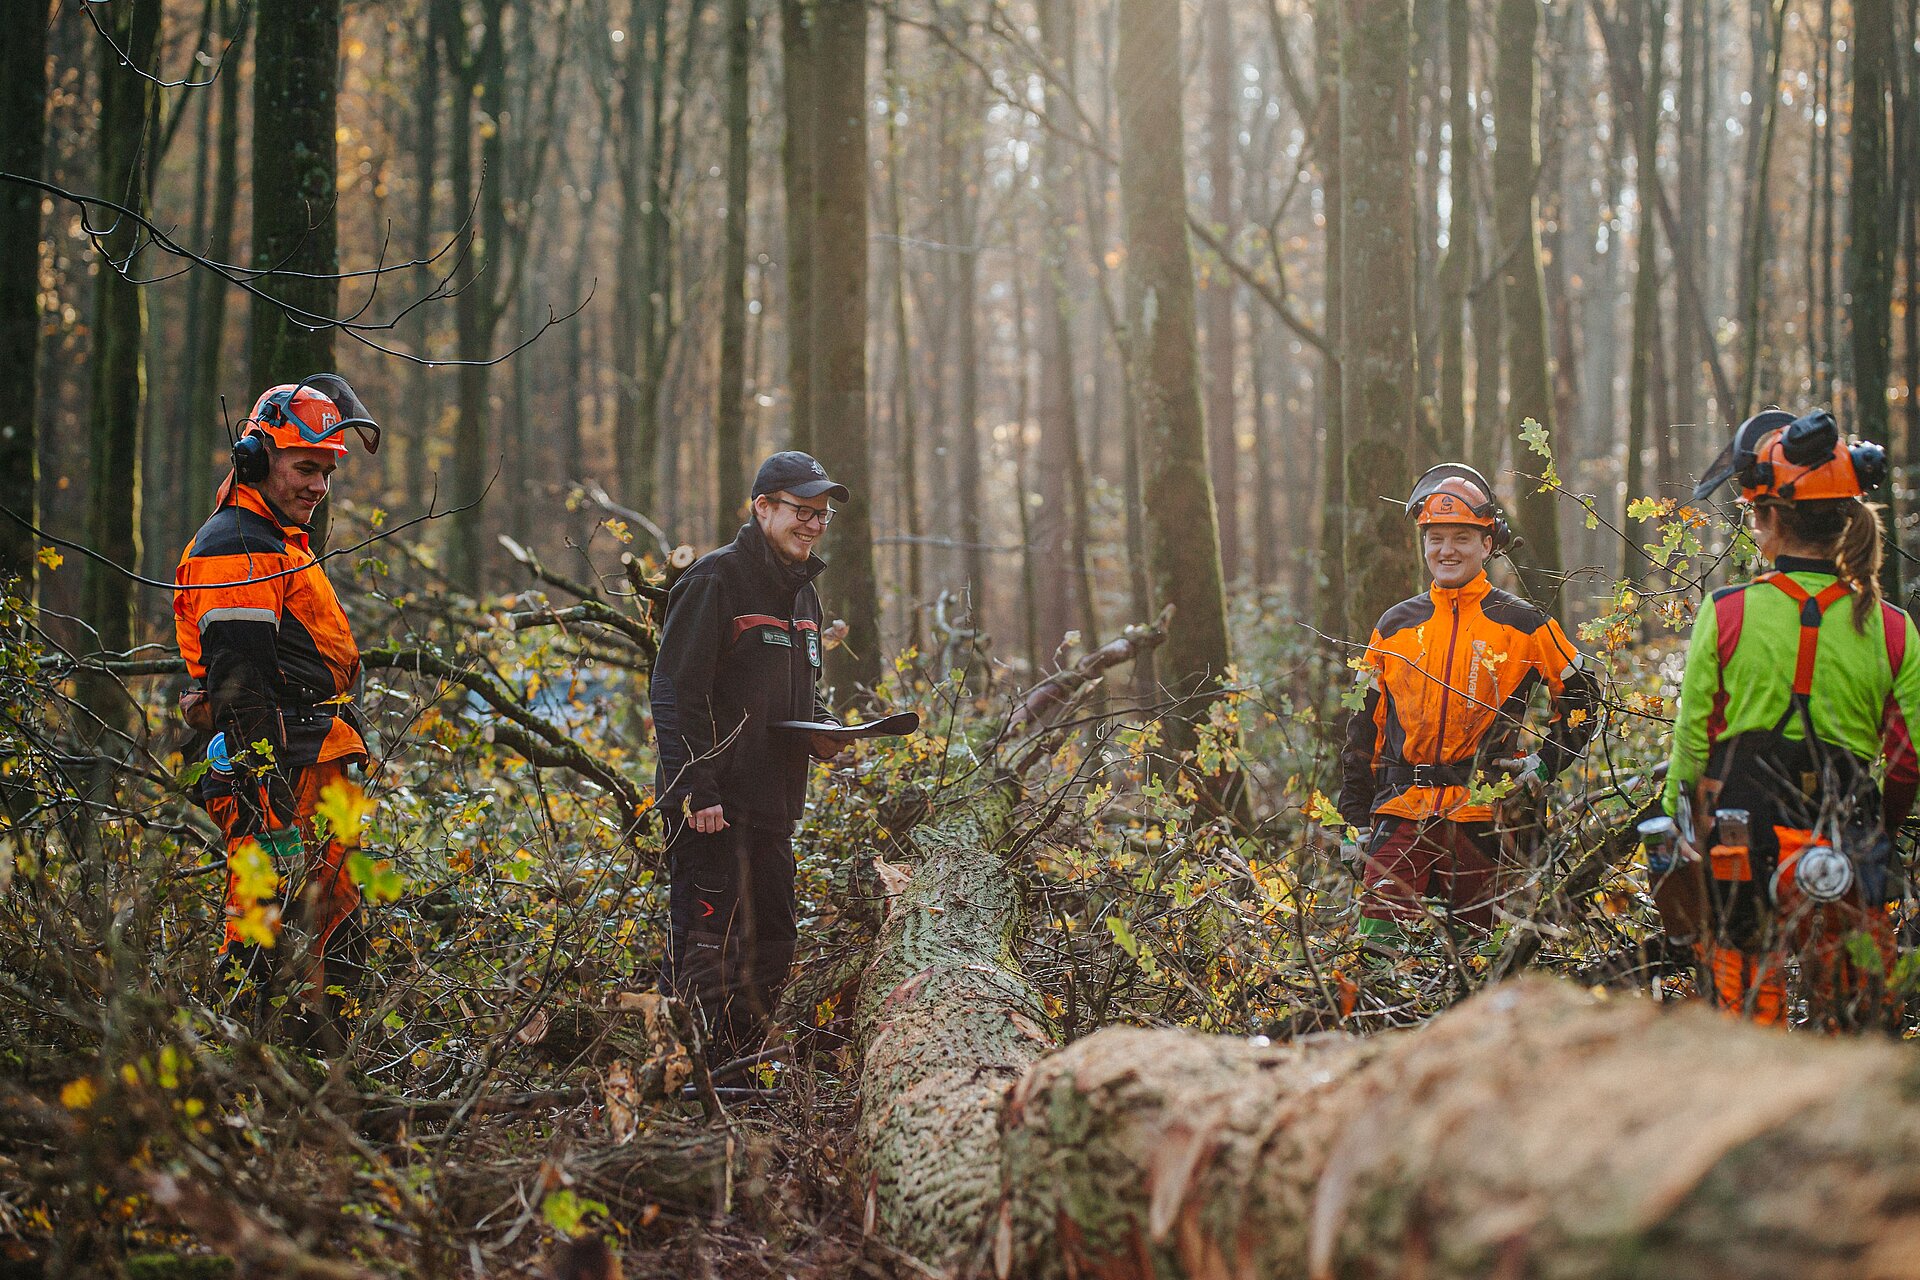 Ausbildungsgespräch zur Qualitätssortierung des Eichenholzes mit RVR-Revierleiter Frederik Vollmer (Mitte) und Auszubildenden zum Forstwirt im Dezember 2020 im RVR-Waldgebiet Haard.